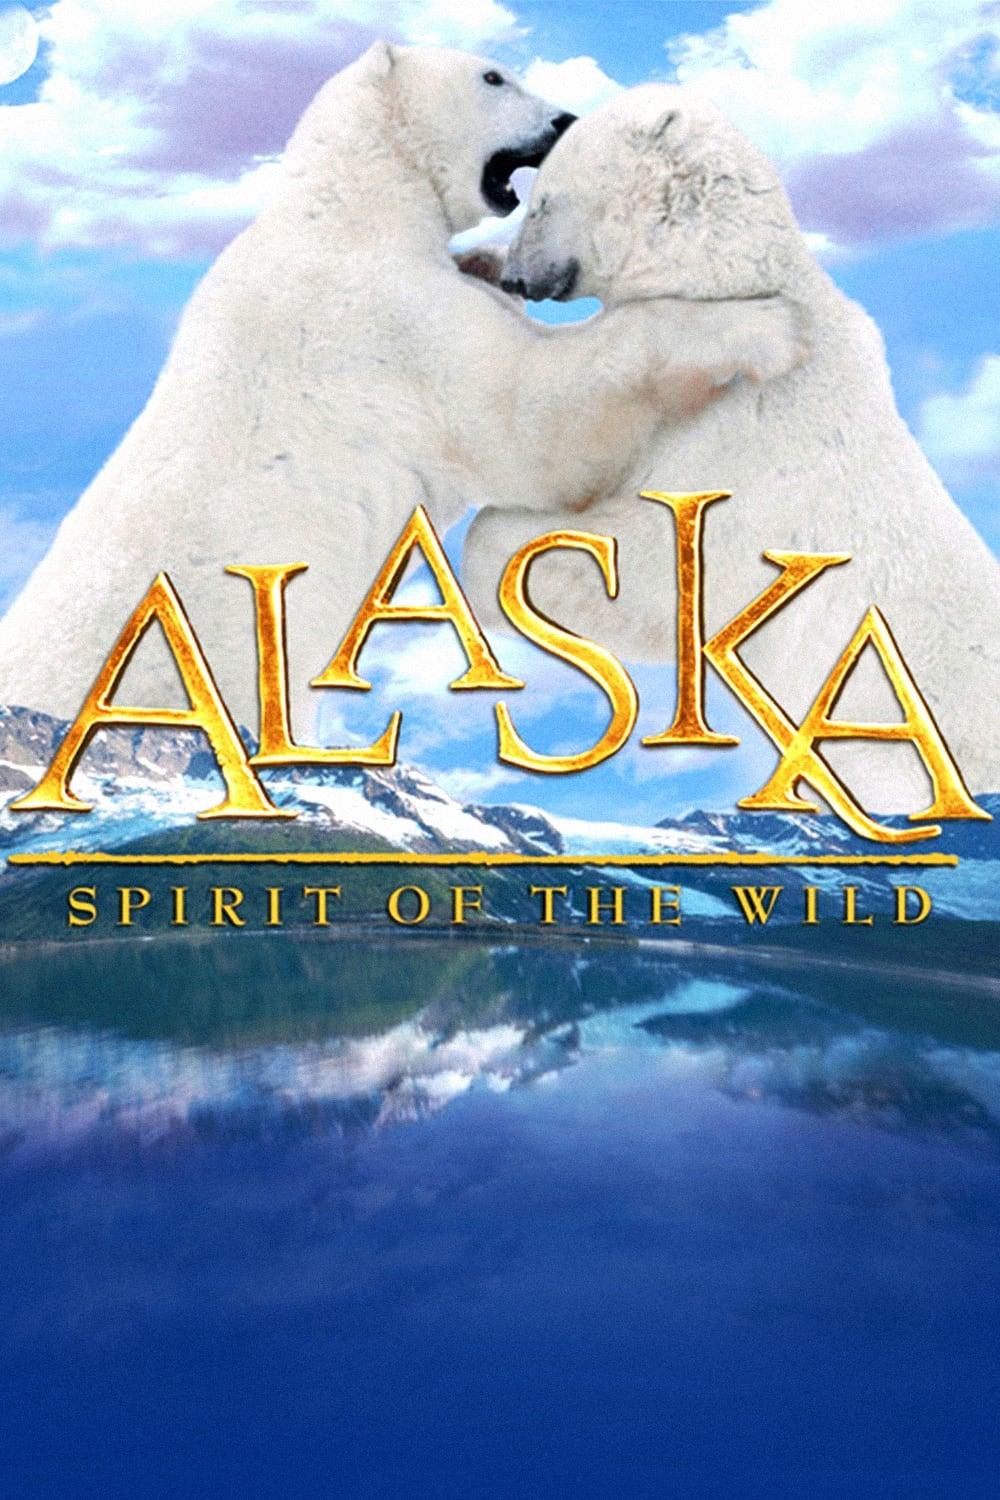 Alaska – Die raue Eiswelt poster